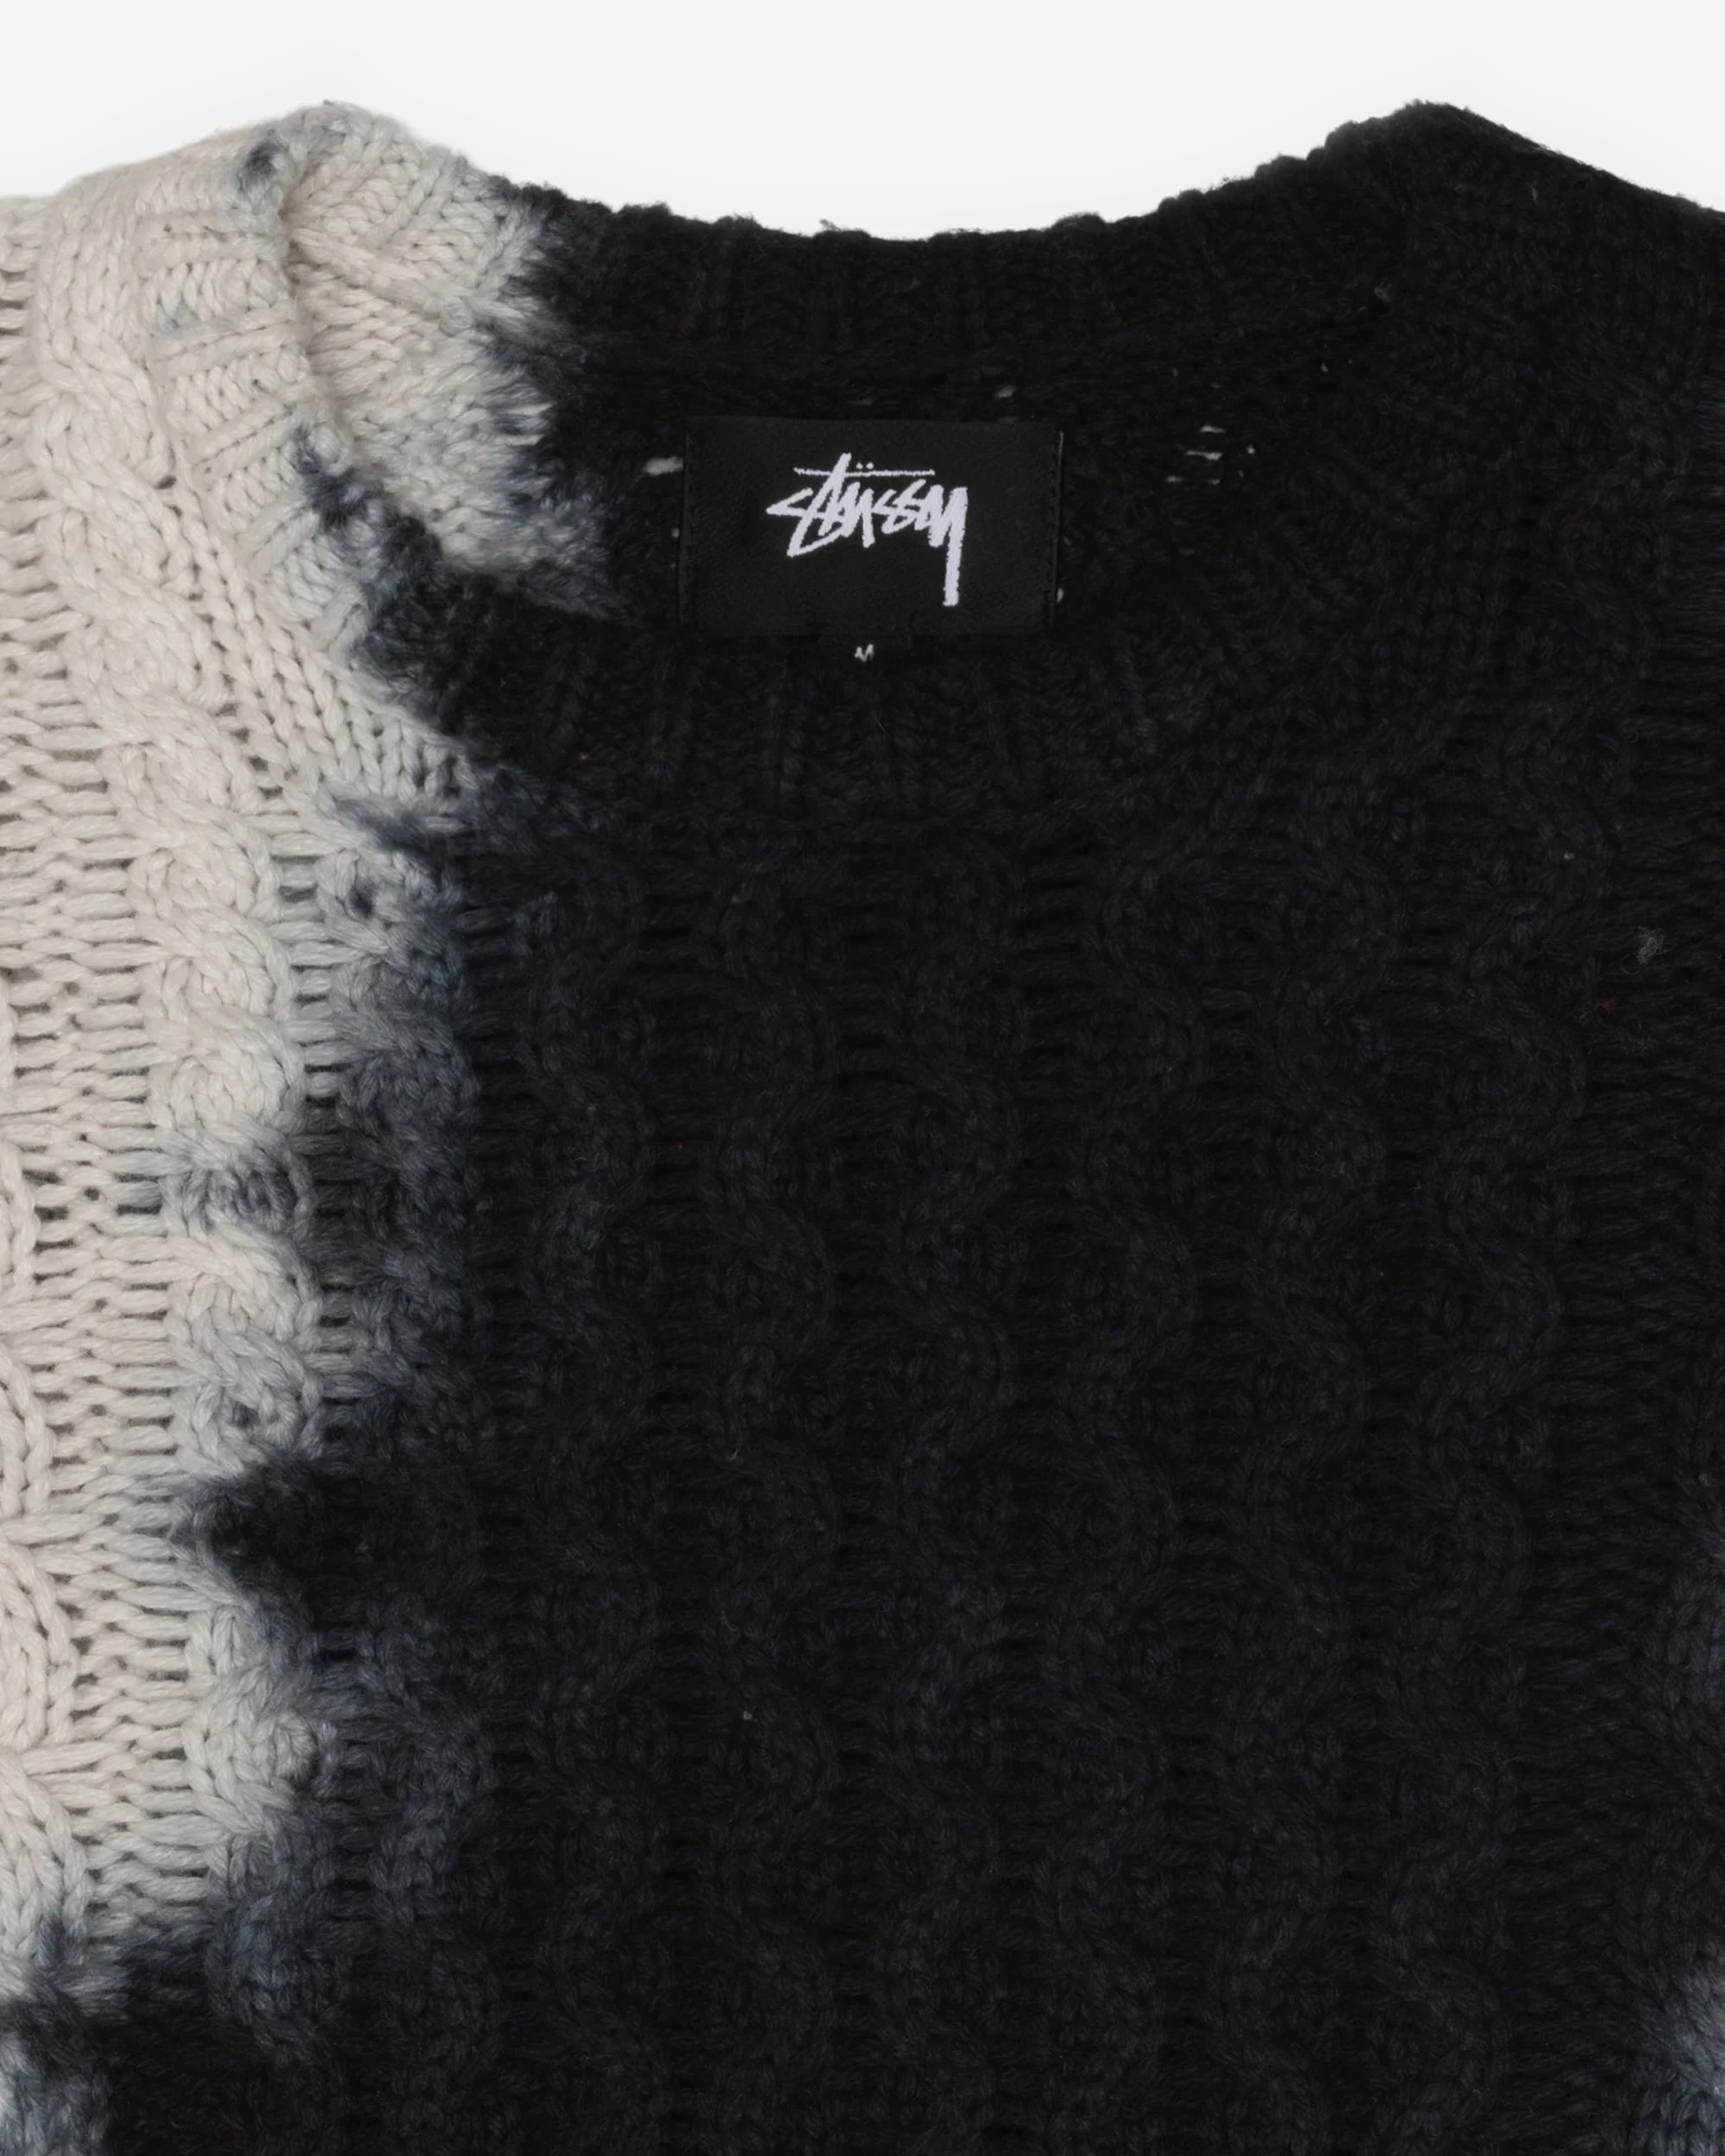 Stüssy Tie Dye Fisherman Sweater black 117188-0001